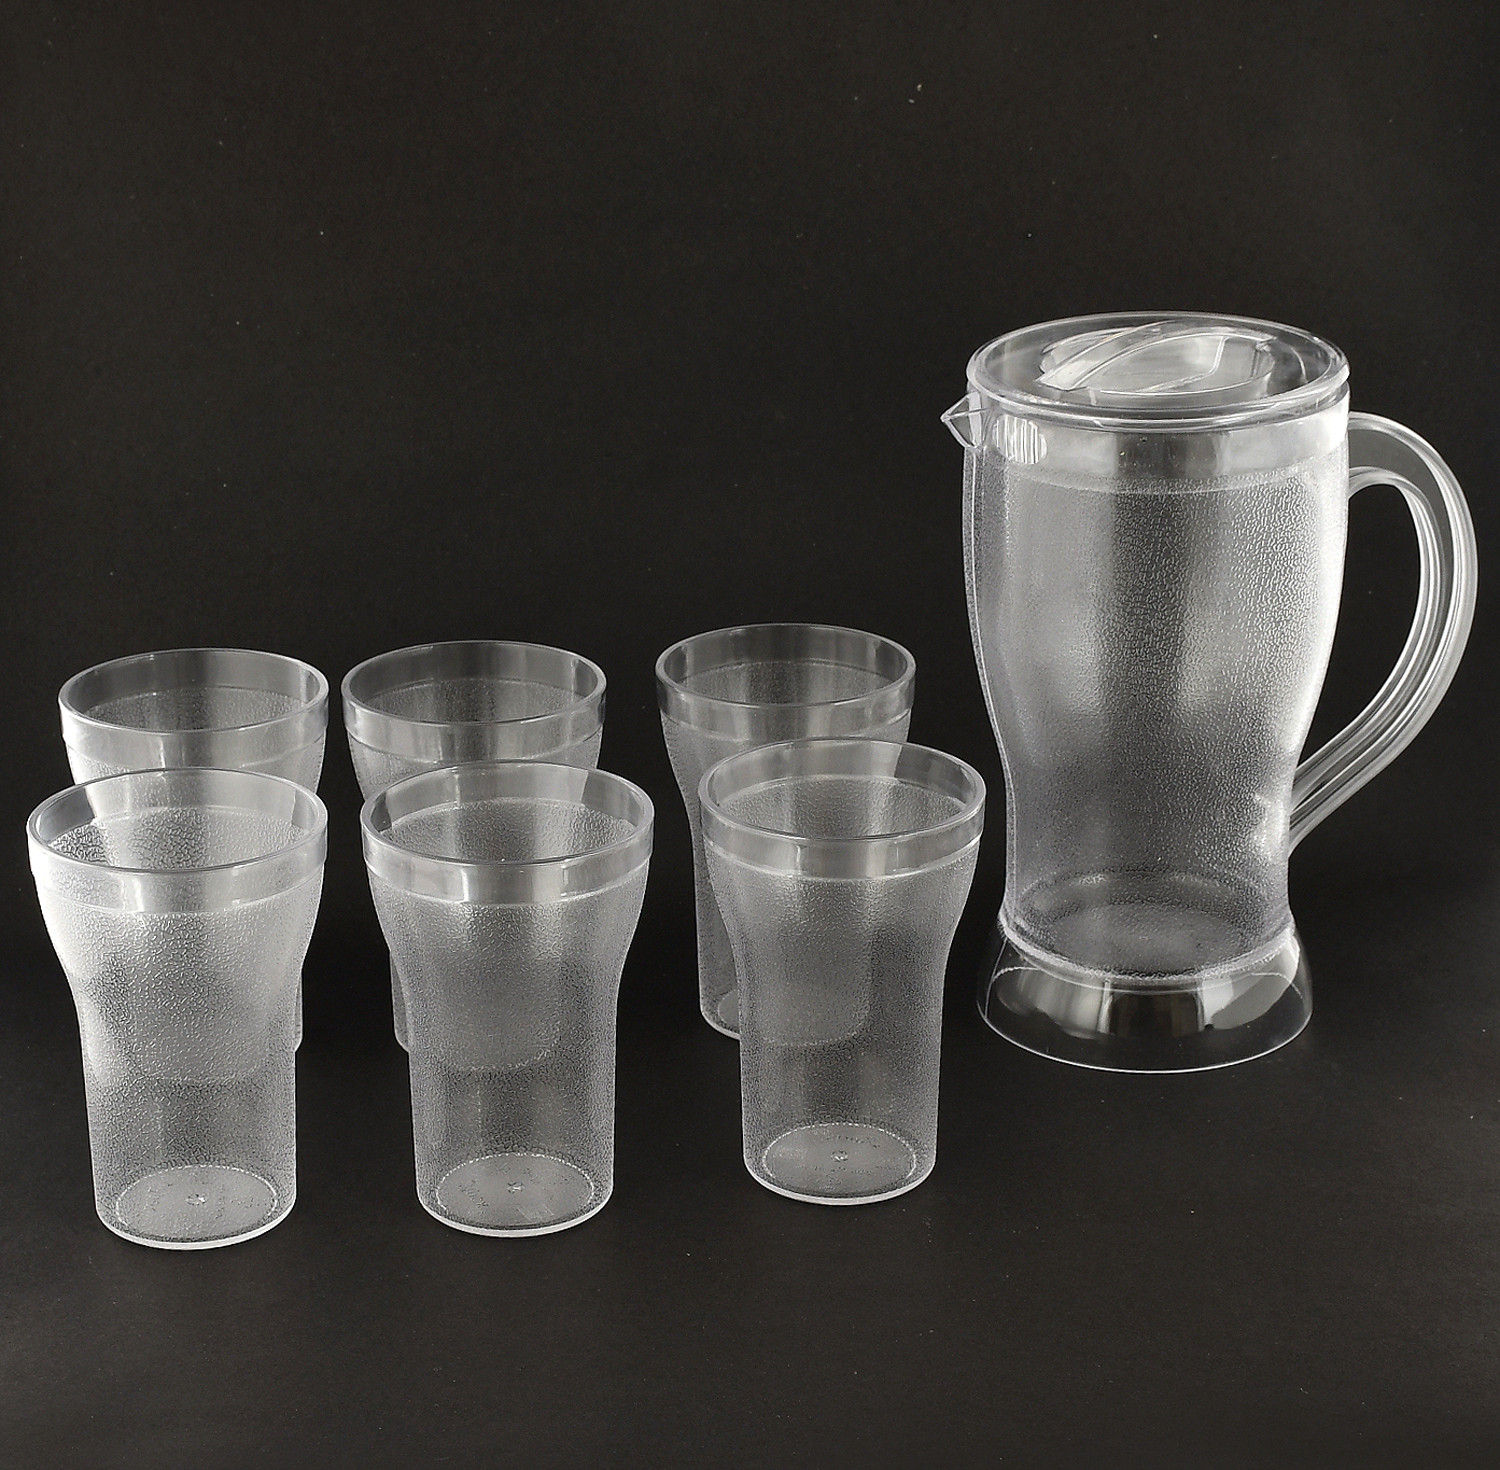 Kuber Industries Unbreakable Plastic Tableware Serving Lemon Set, Water jug with 6 Water Glass,(Set of 7 Pcs)